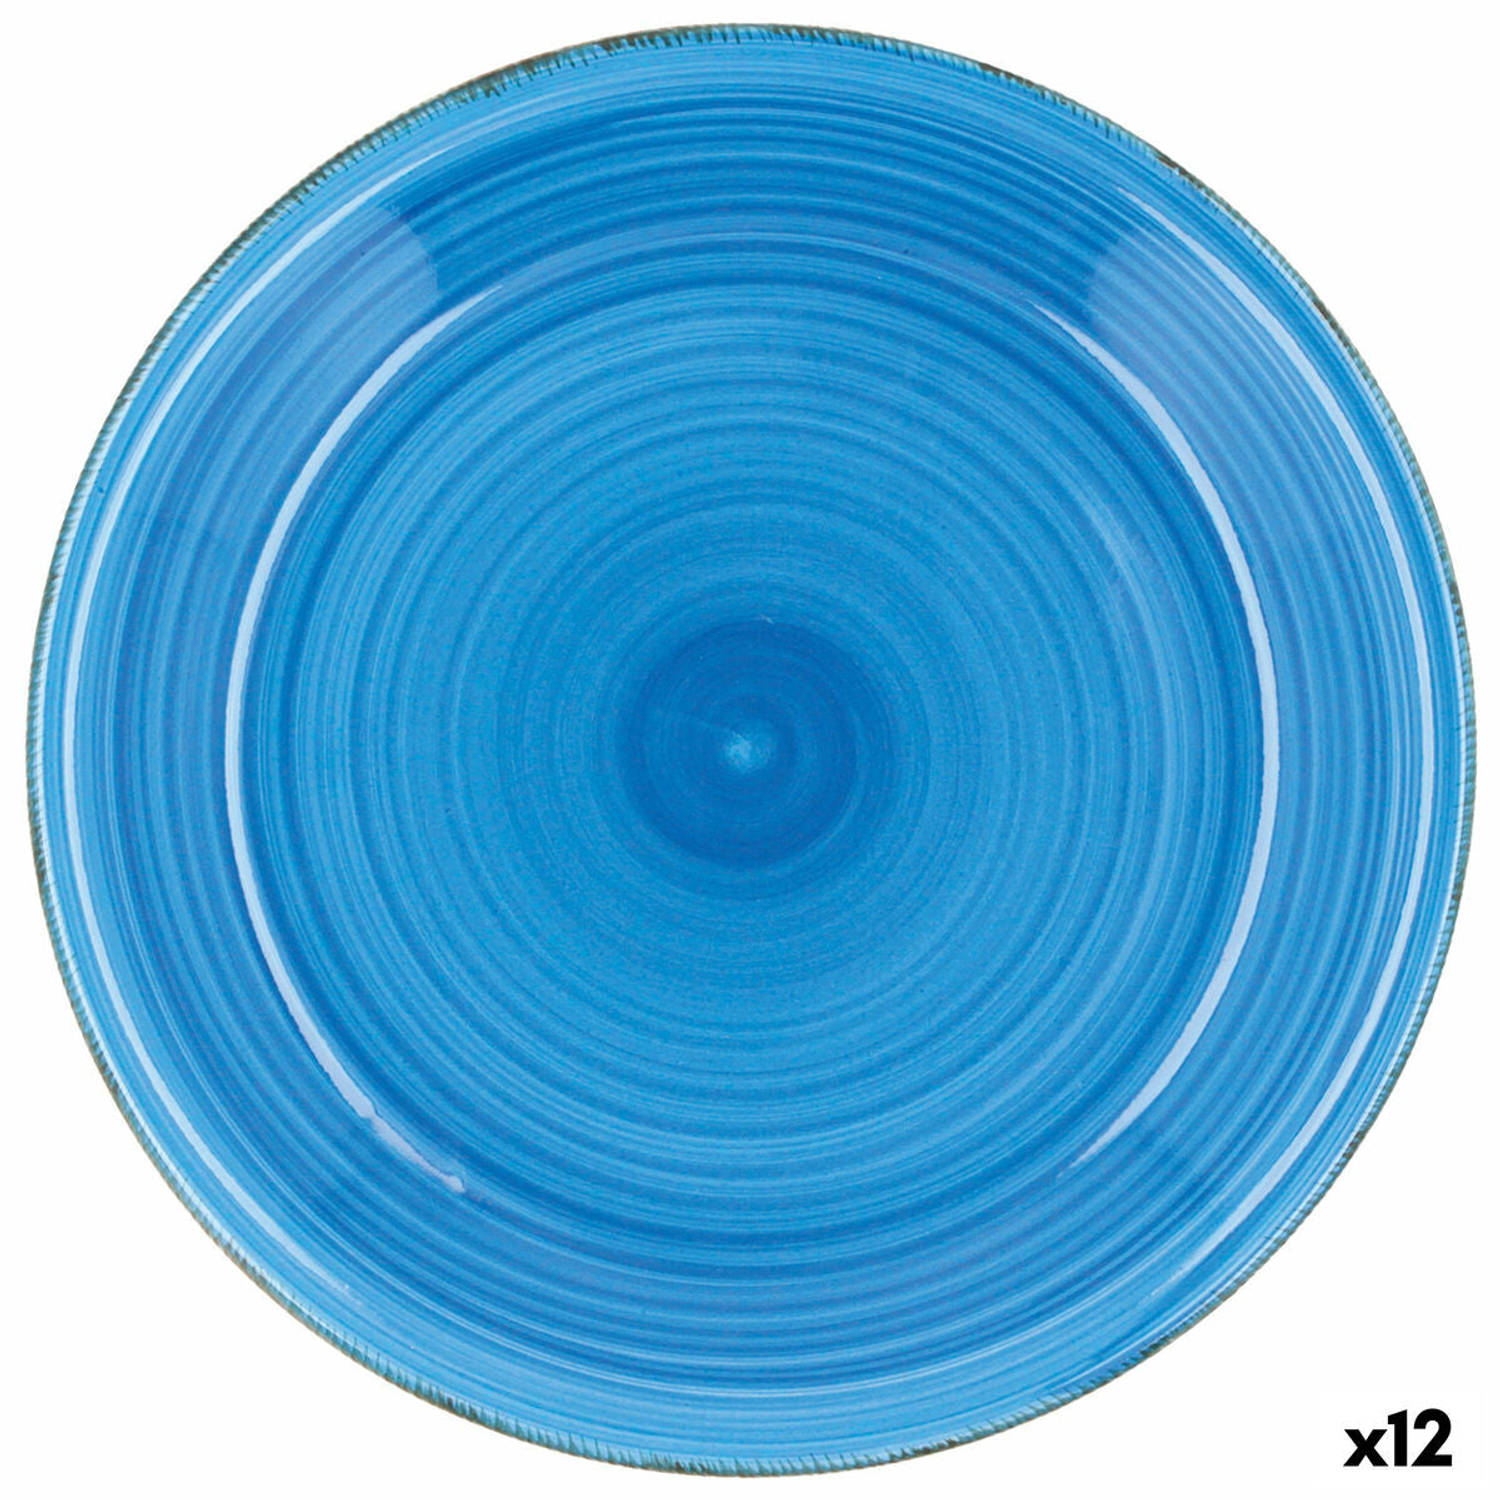 Eetbord Quid Vita Azul Blauw Keramisch Ø 27 cm (12 Stuks)